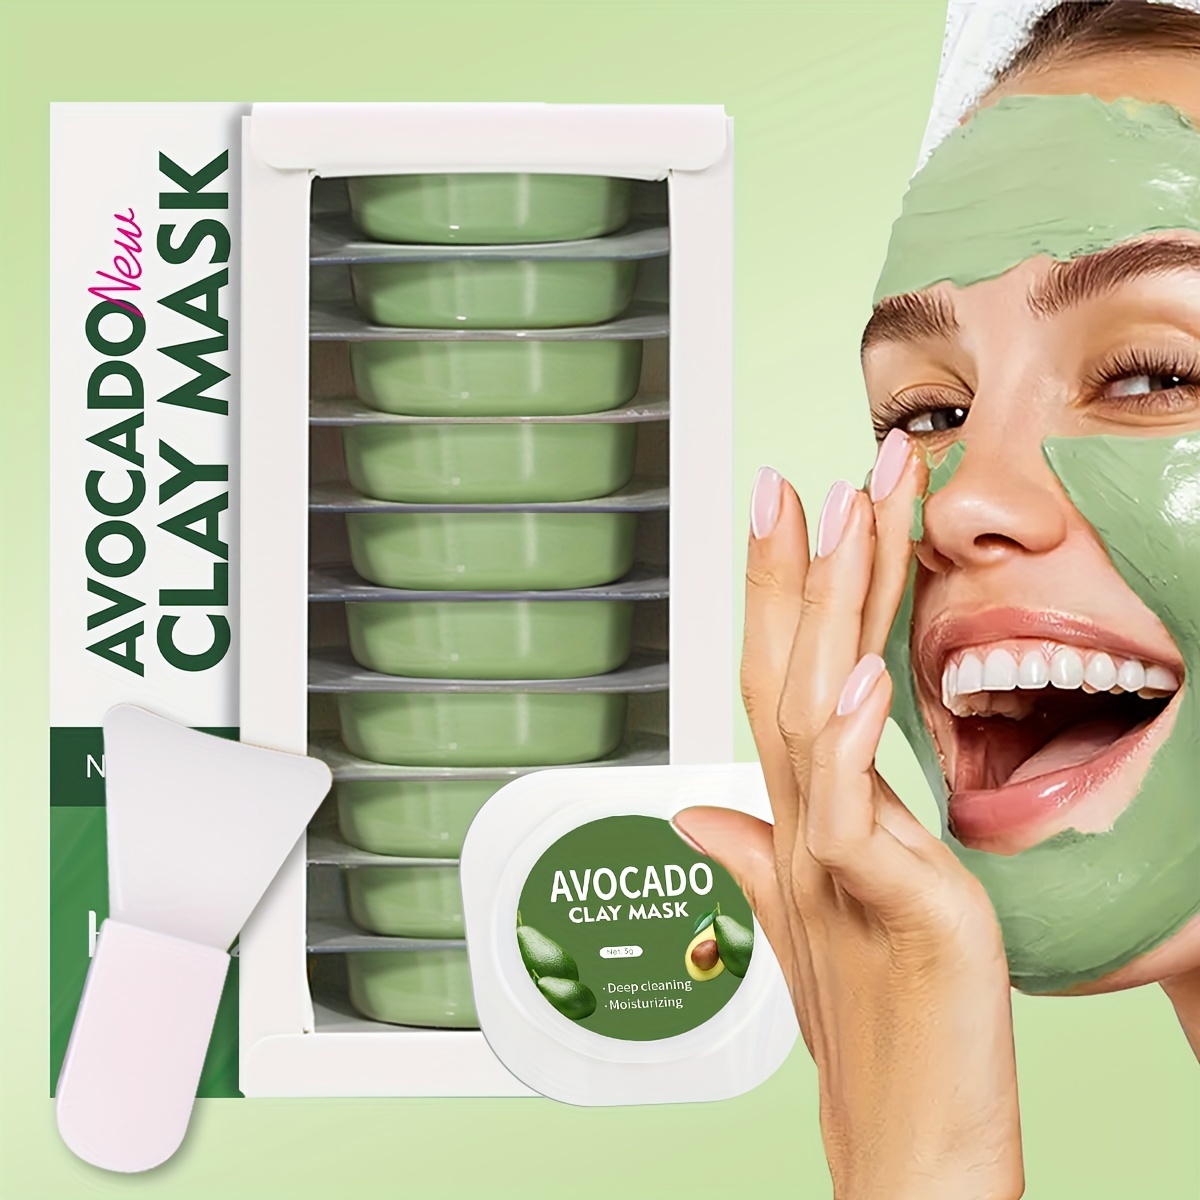 

Masque d'argile à l'avocat 10pcs*5g pour un nettoyage en profondeur, une hydratation et un rajeunissement de la peau, un essentiel de voyage